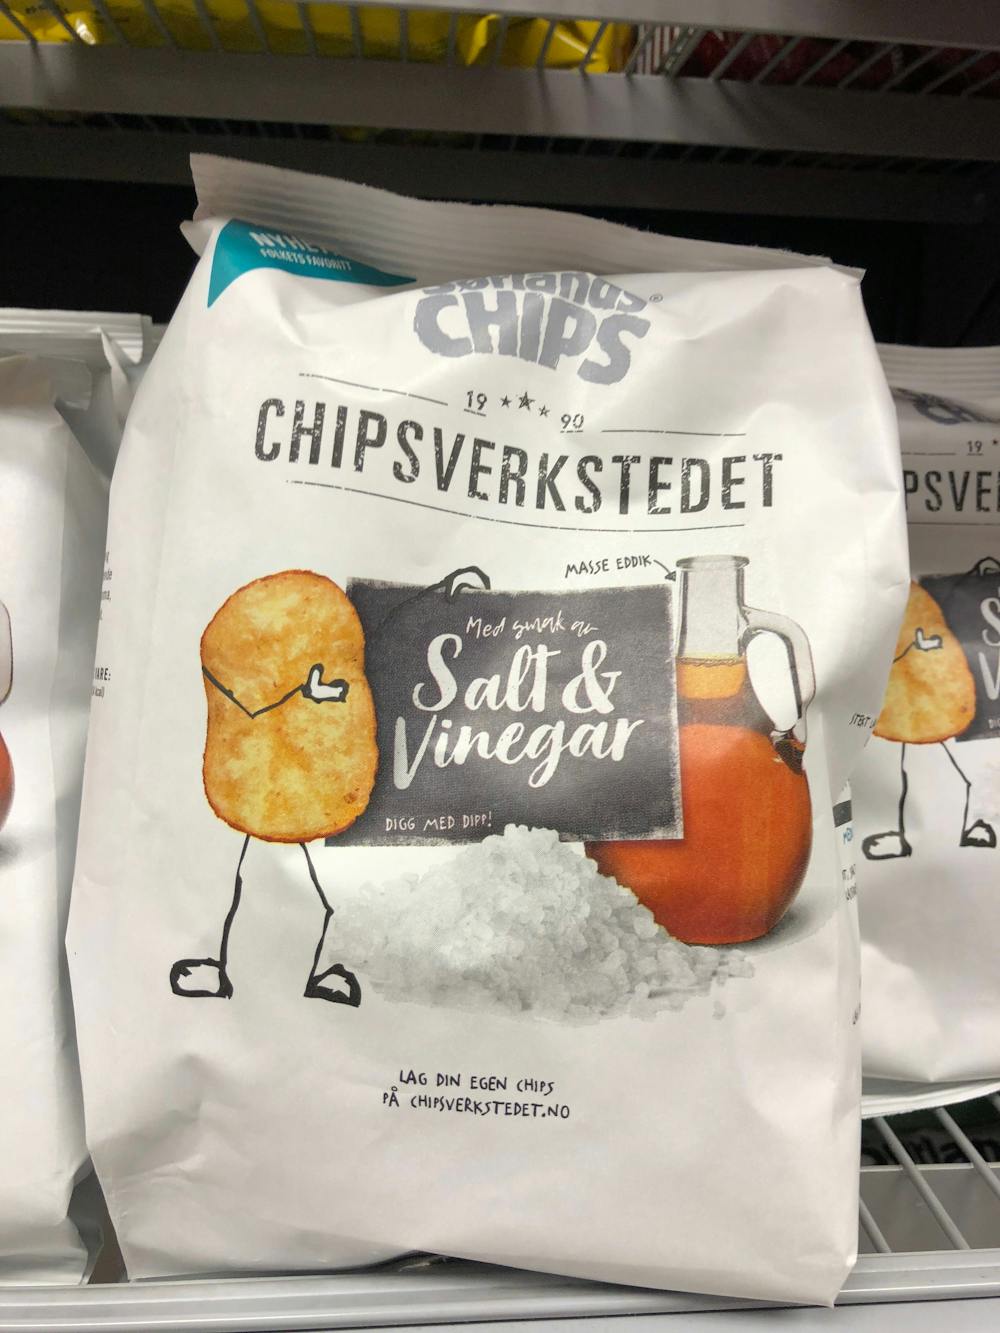 Salt & Vinegar, Sørlandschips